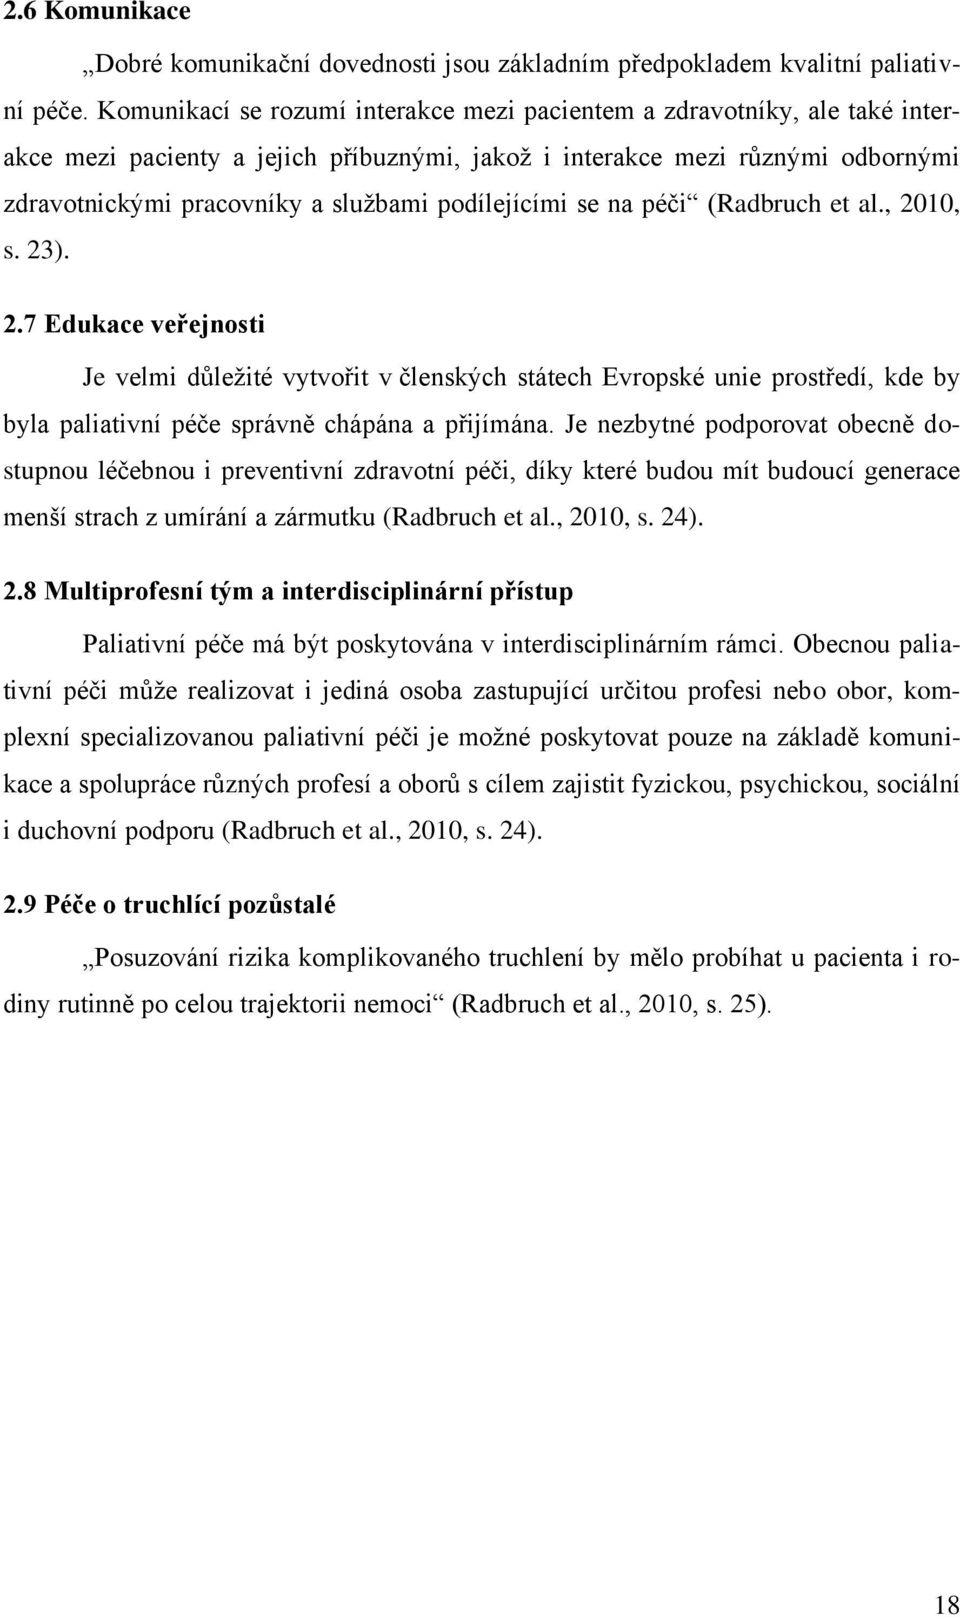 podílejícími se na péči (Radbruch et al., 2010, s. 23). 2.7 Edukace veřejnosti Je velmi důležité vytvořit v členských státech Evropské unie prostředí, kde by byla paliativní péče správně chápána a přijímána.